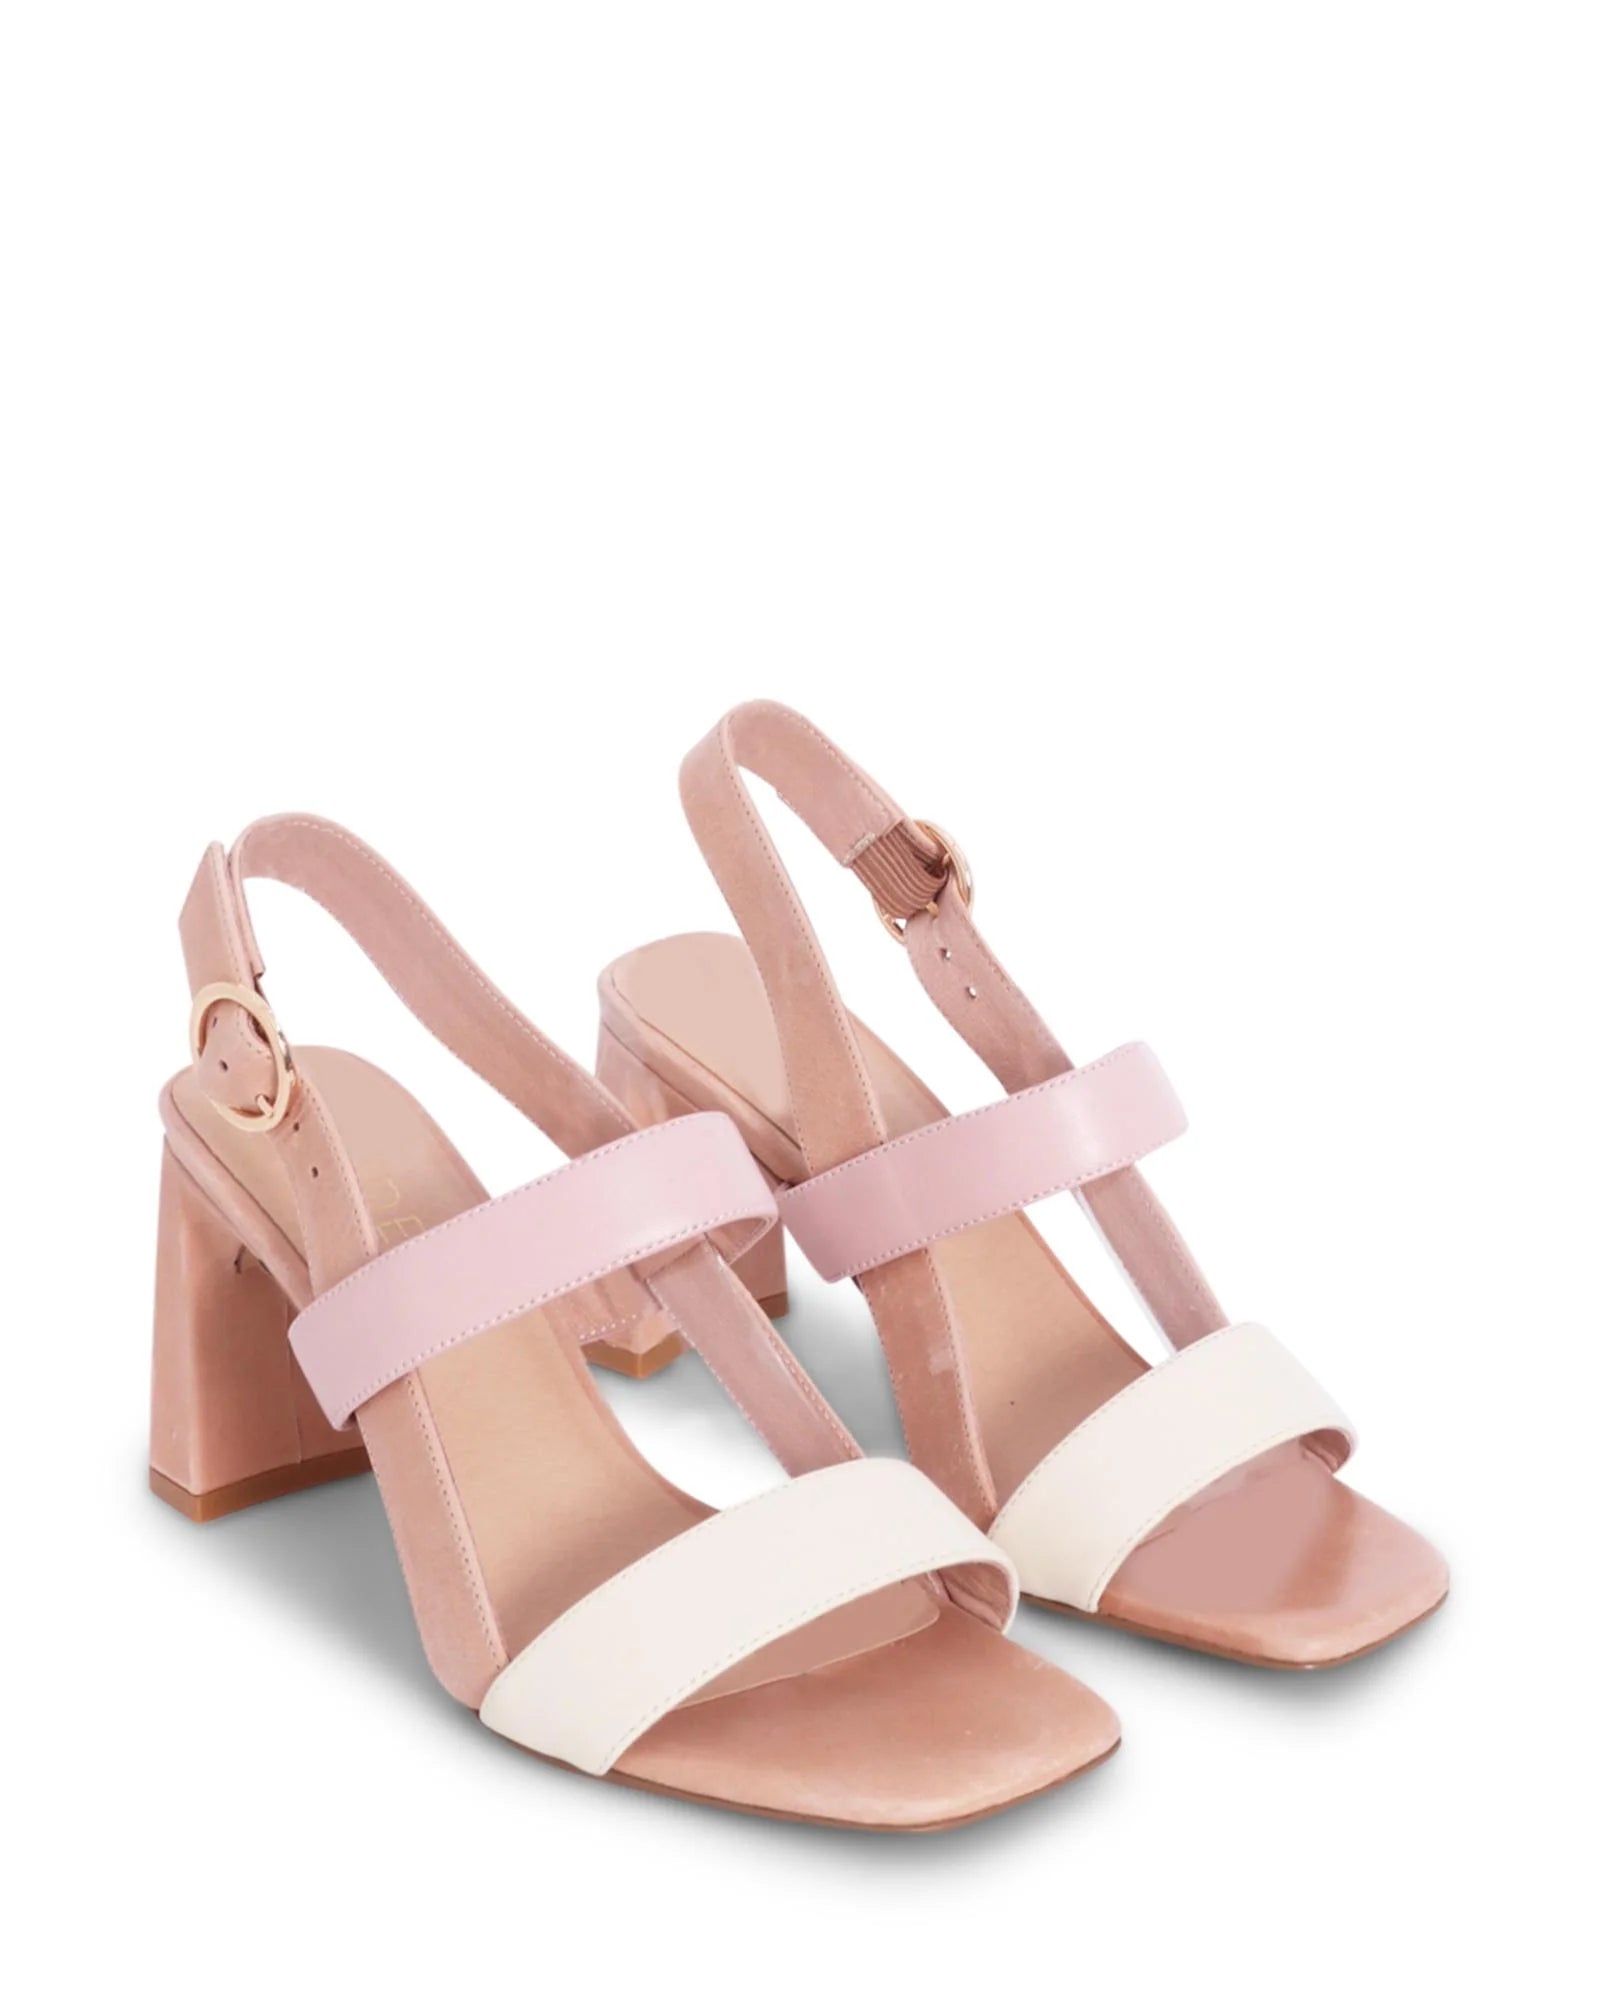 CHEYENNE BLOCK HEEL - NUDE FOOTWEAR - 36, 37, 38, 39, 40, 41, BF, Cream, Pink, womens footwear - Stomp Shoes Darwin